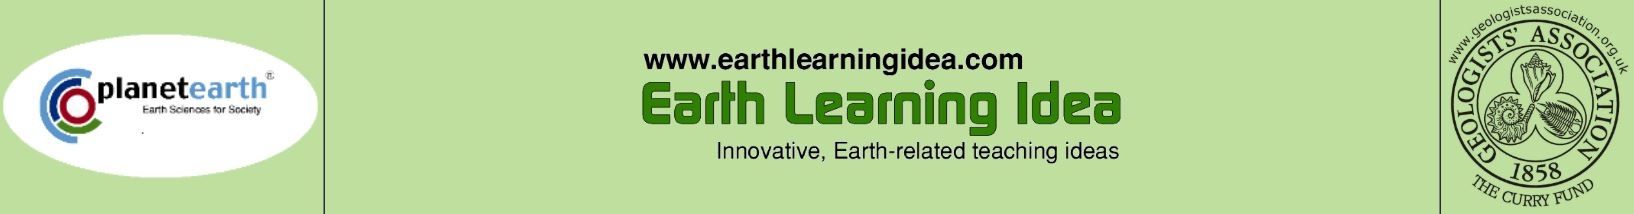 Earth Learning Idea